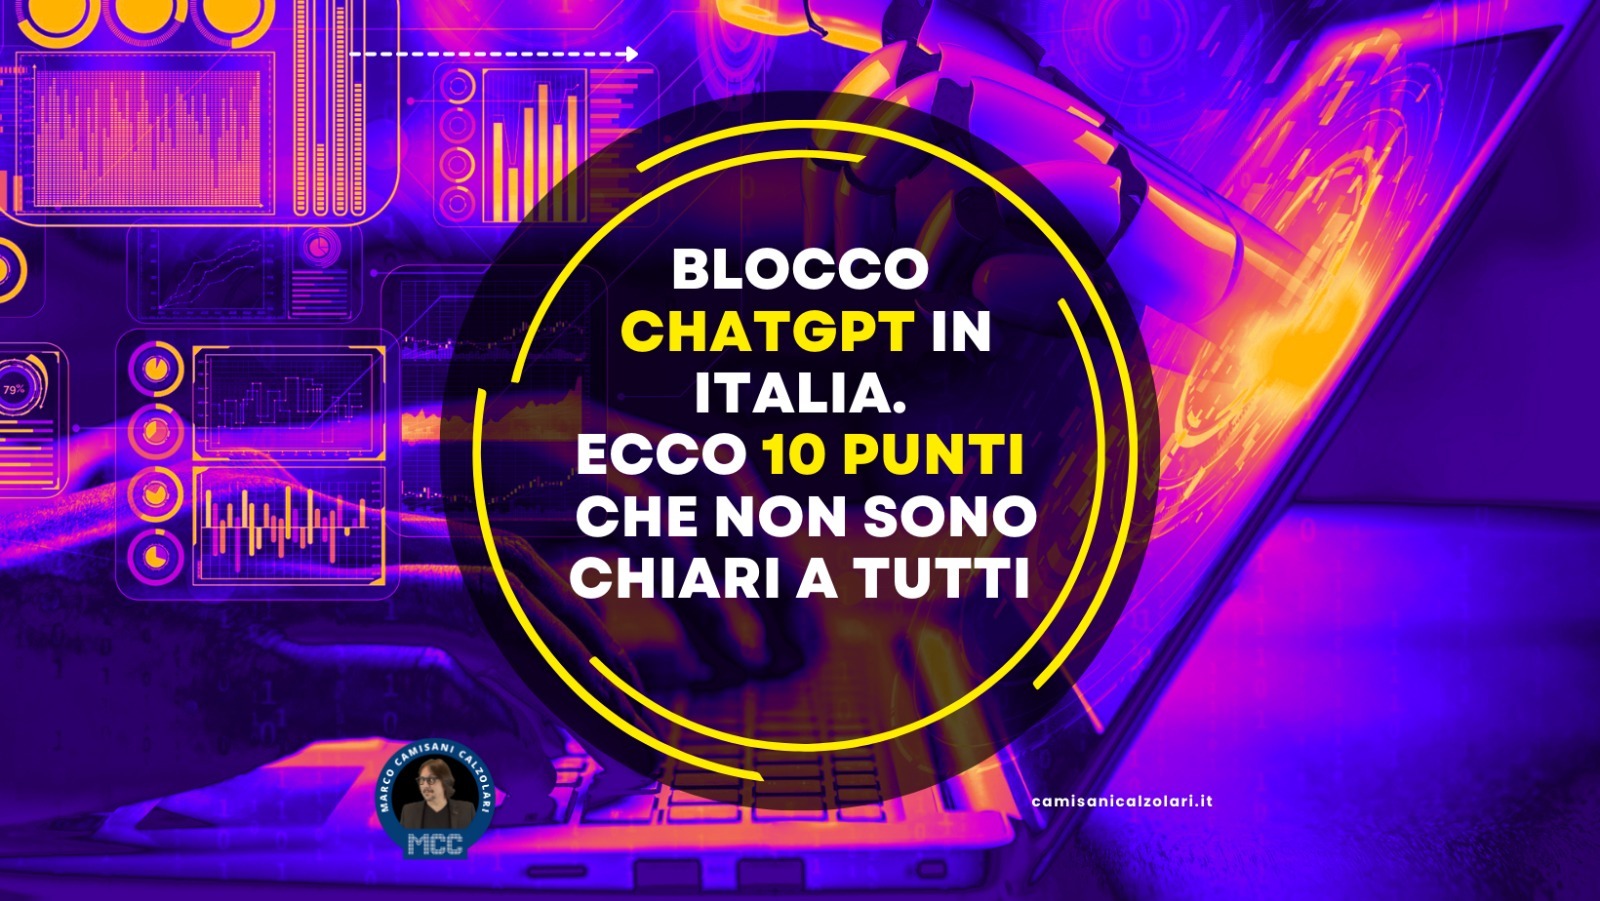 Blocco ChatGPT in Italia. Ecco 10 punti che non sono chiari a tutti. 1 1